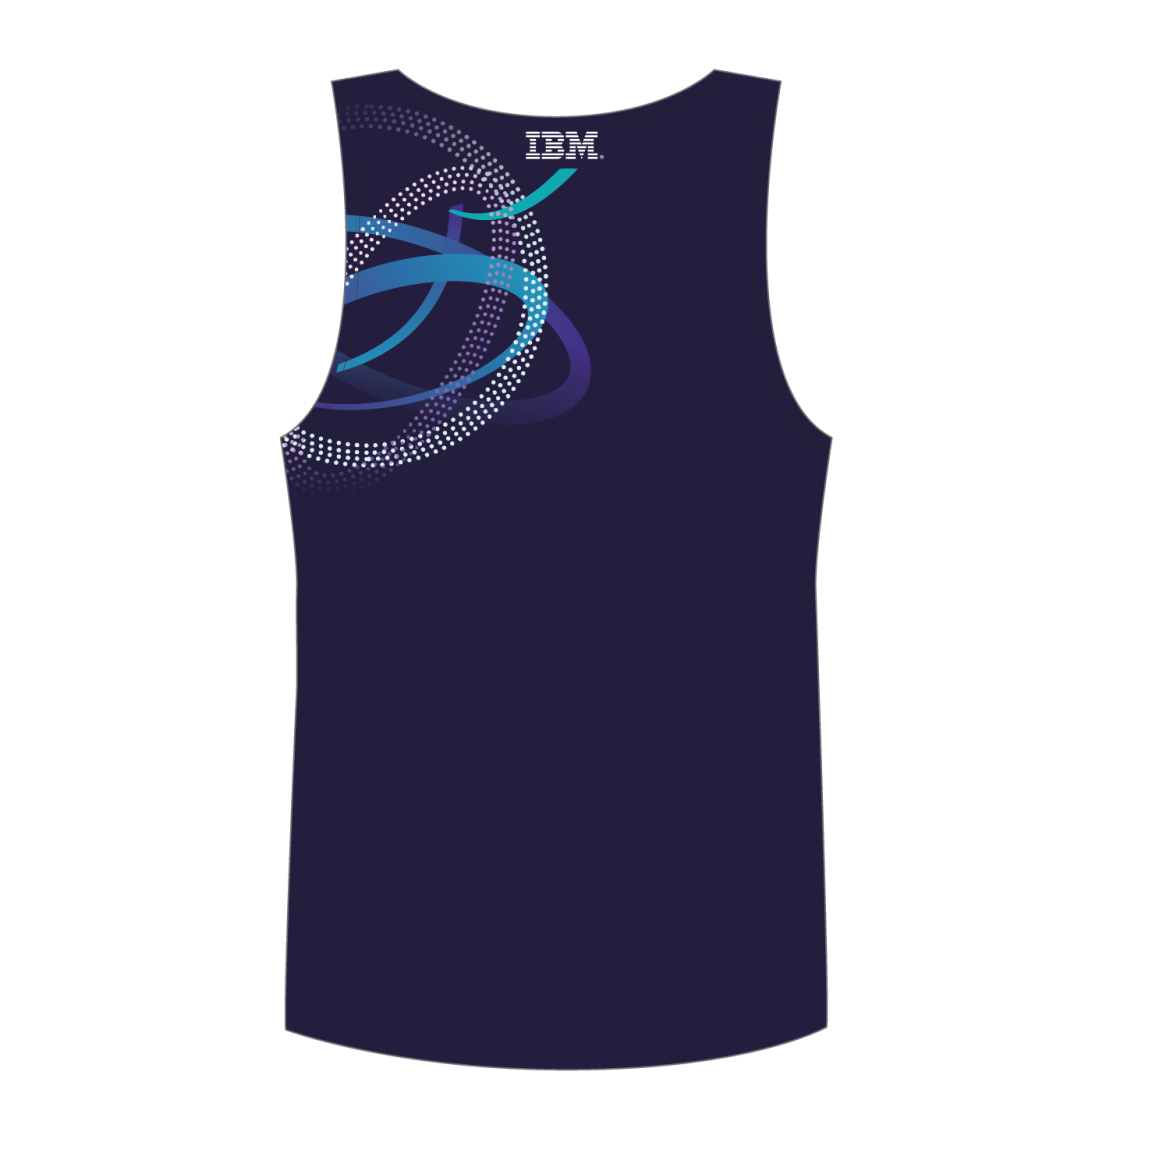 IBM singlet back side TD sportswear